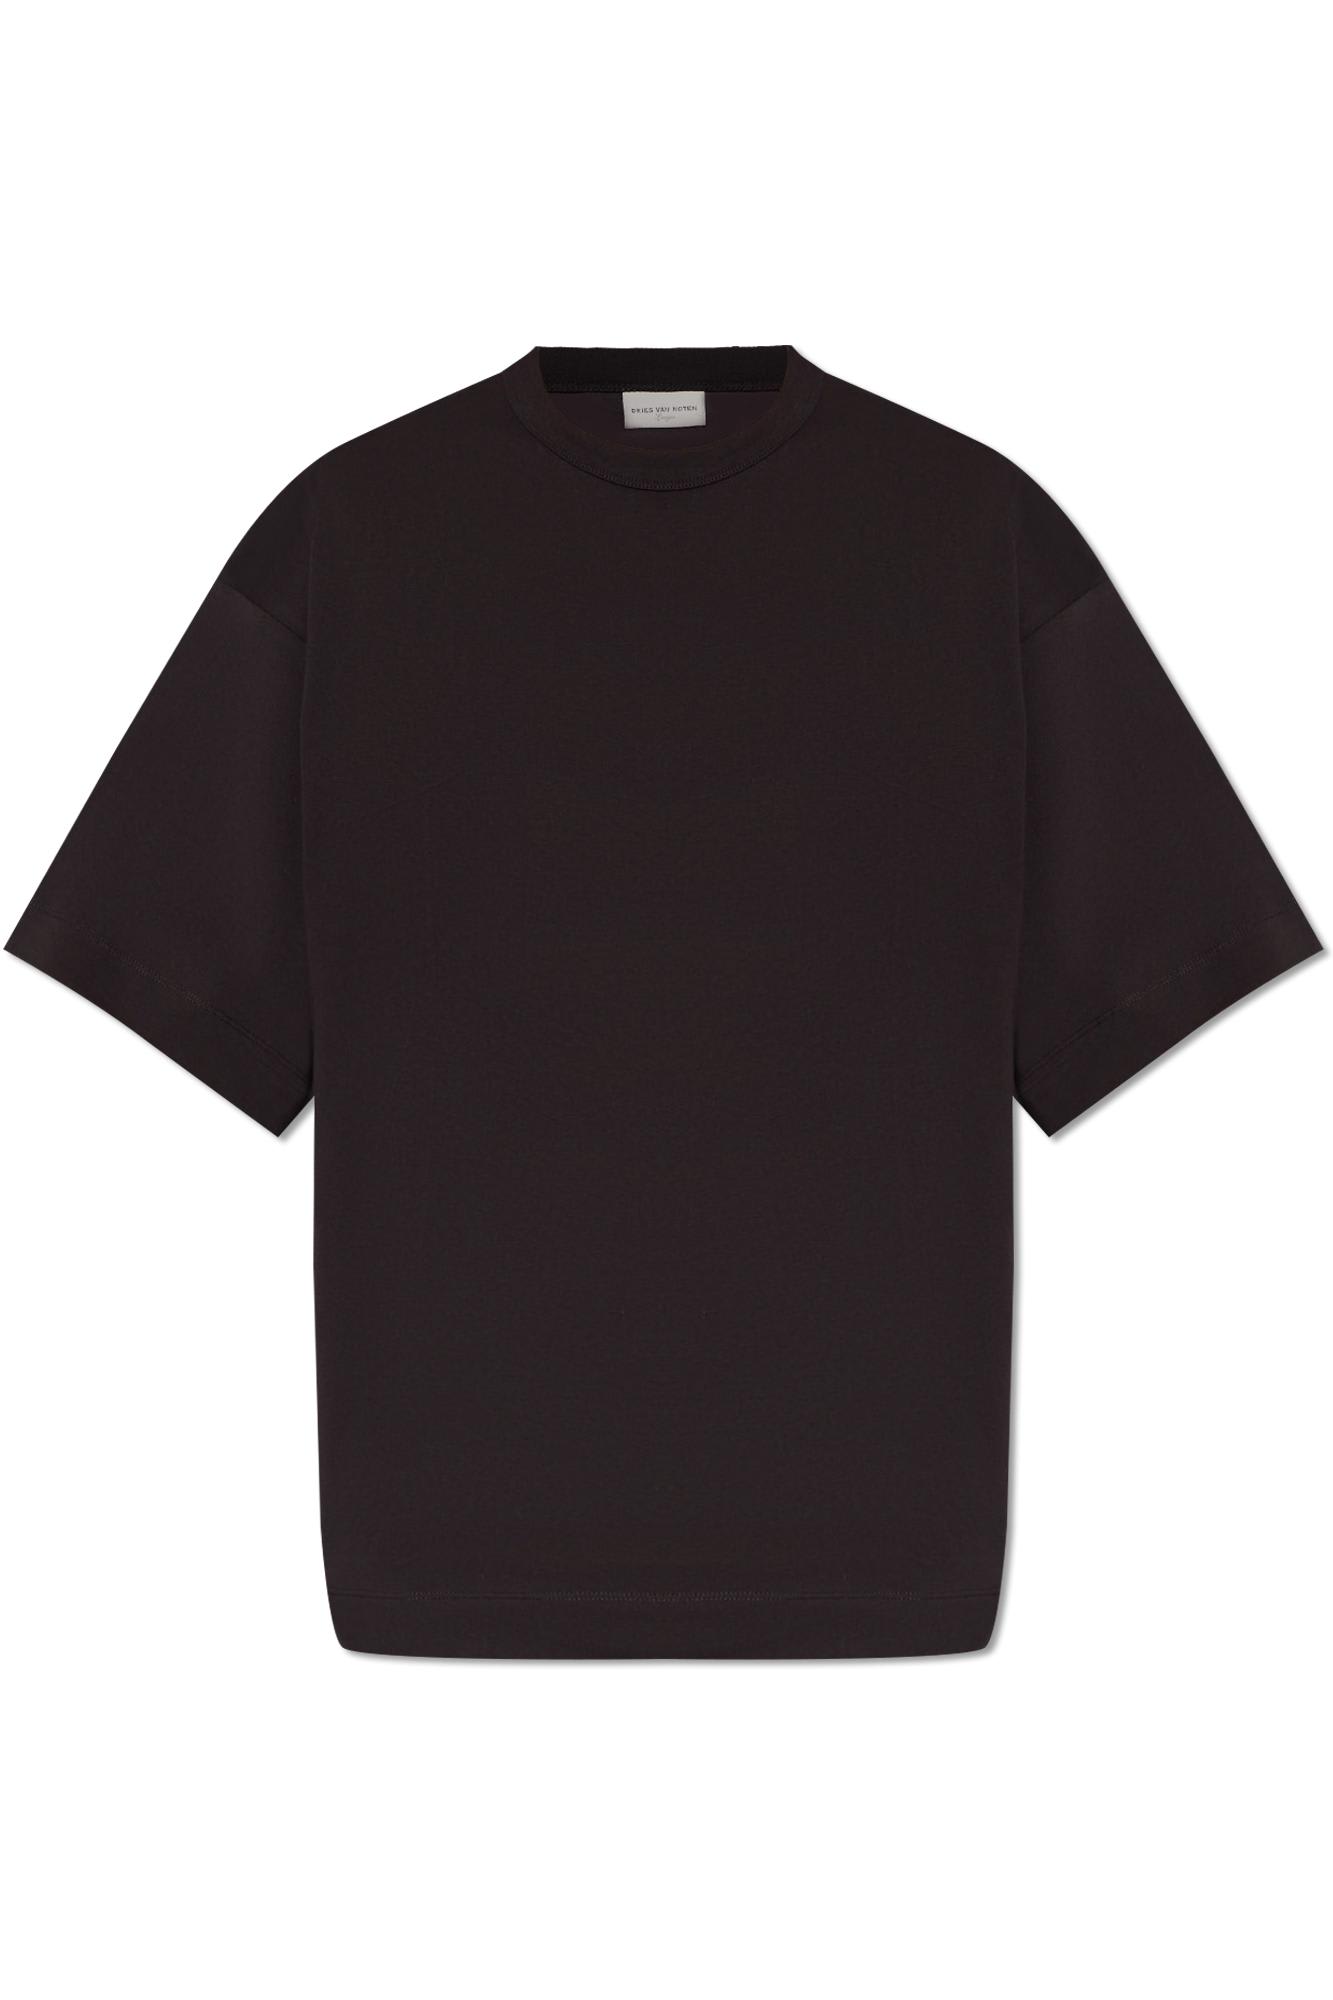 Dries Van Noten Cotton T-shirt In Brown